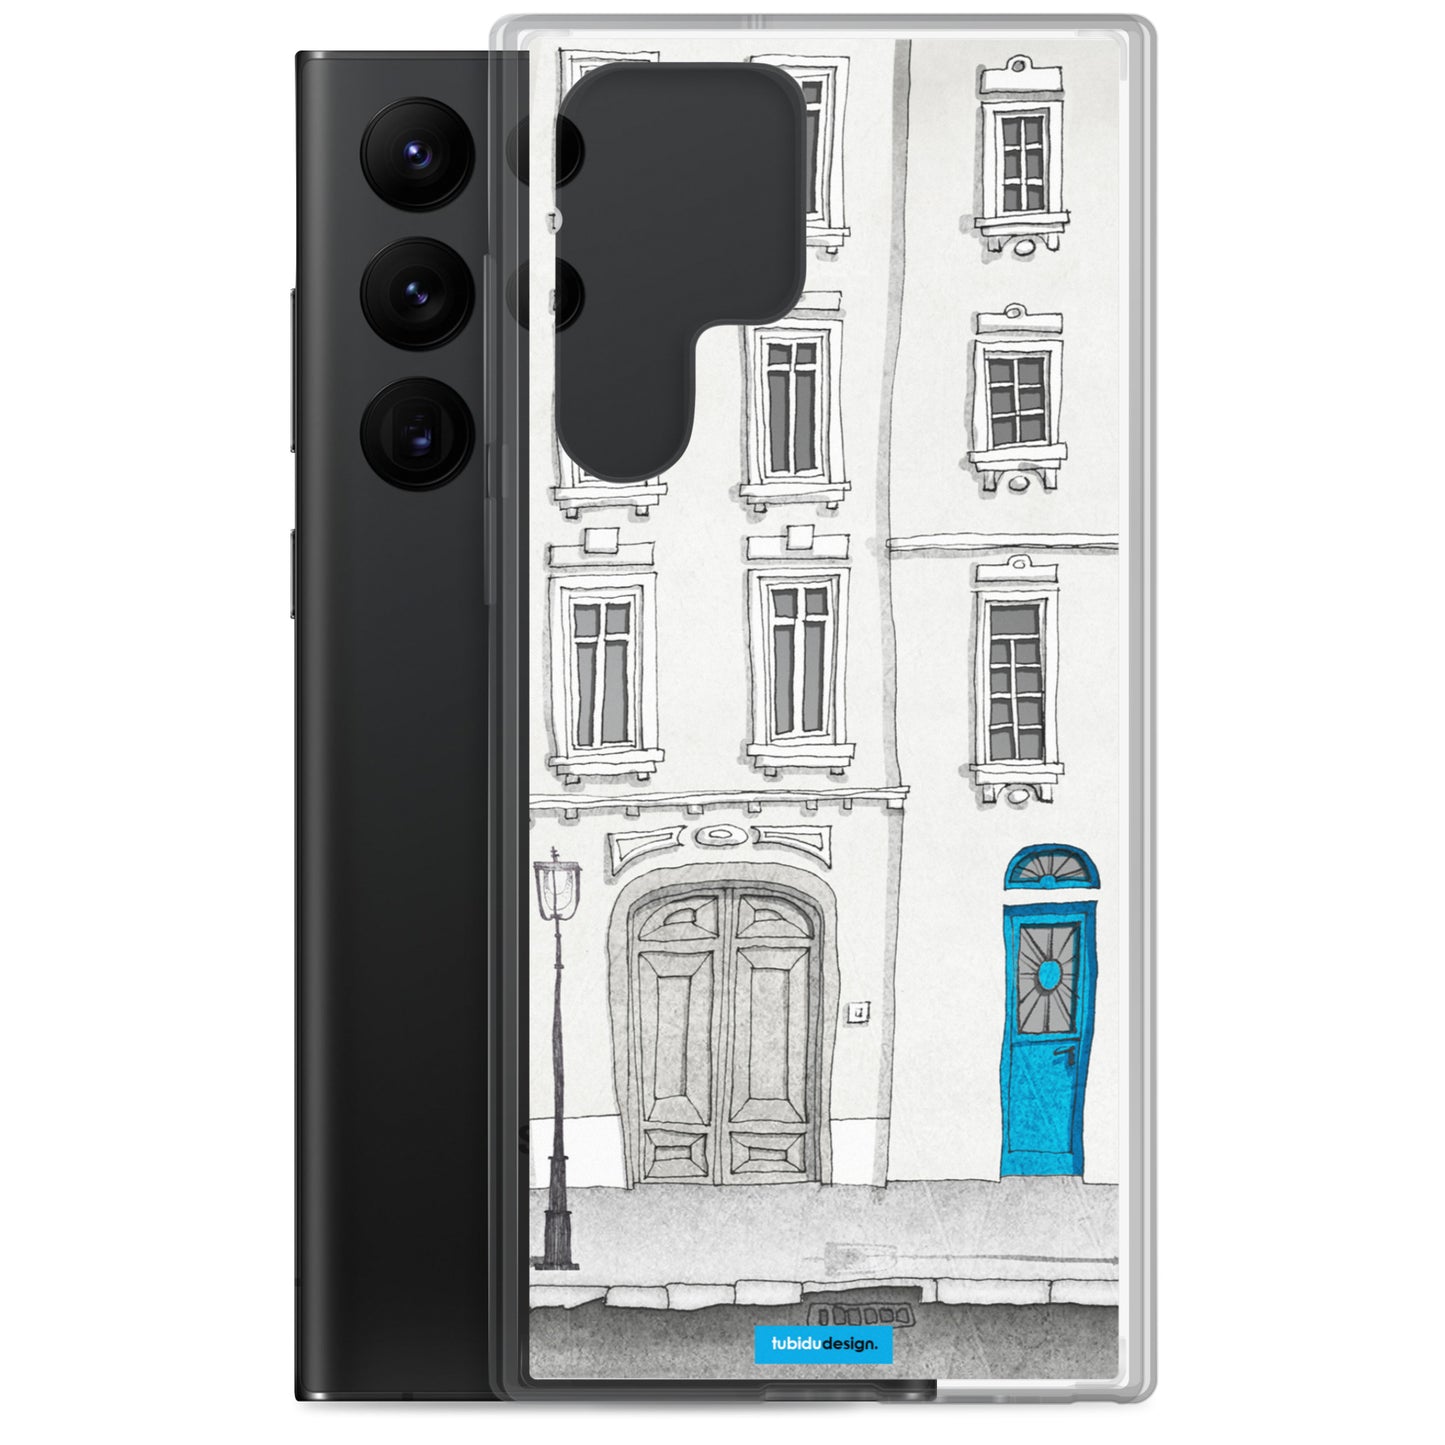 The magic door - Illustrated Samsung Phone Case